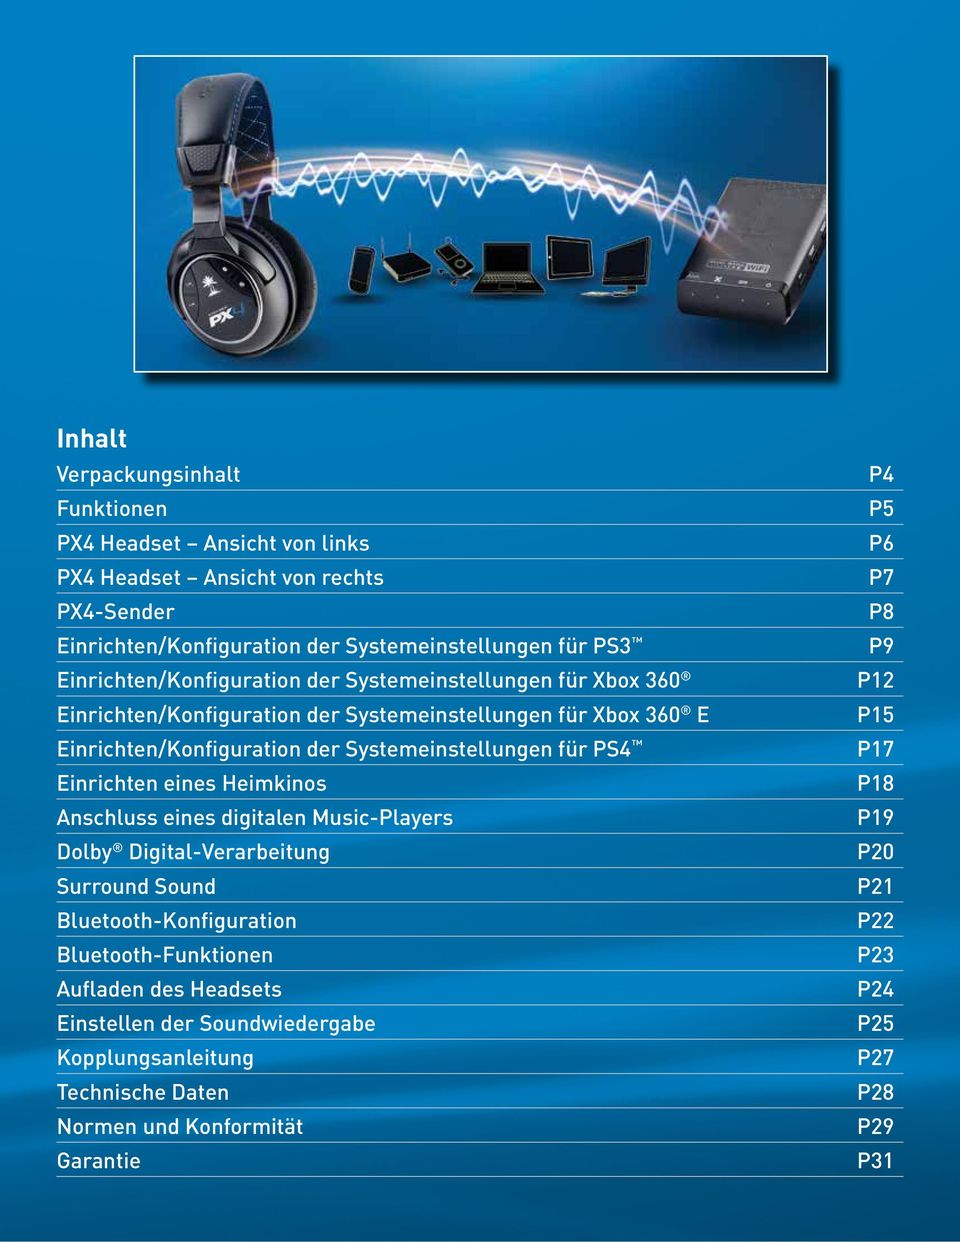 für PS4 Einrichten eines Heimkinos Anschluss eines digitalen Music-Players Dolby Digital-Verarbeitung Surround Sound Bluetooth-Konfiguration Bluetooth-Funktionen Aufladen des